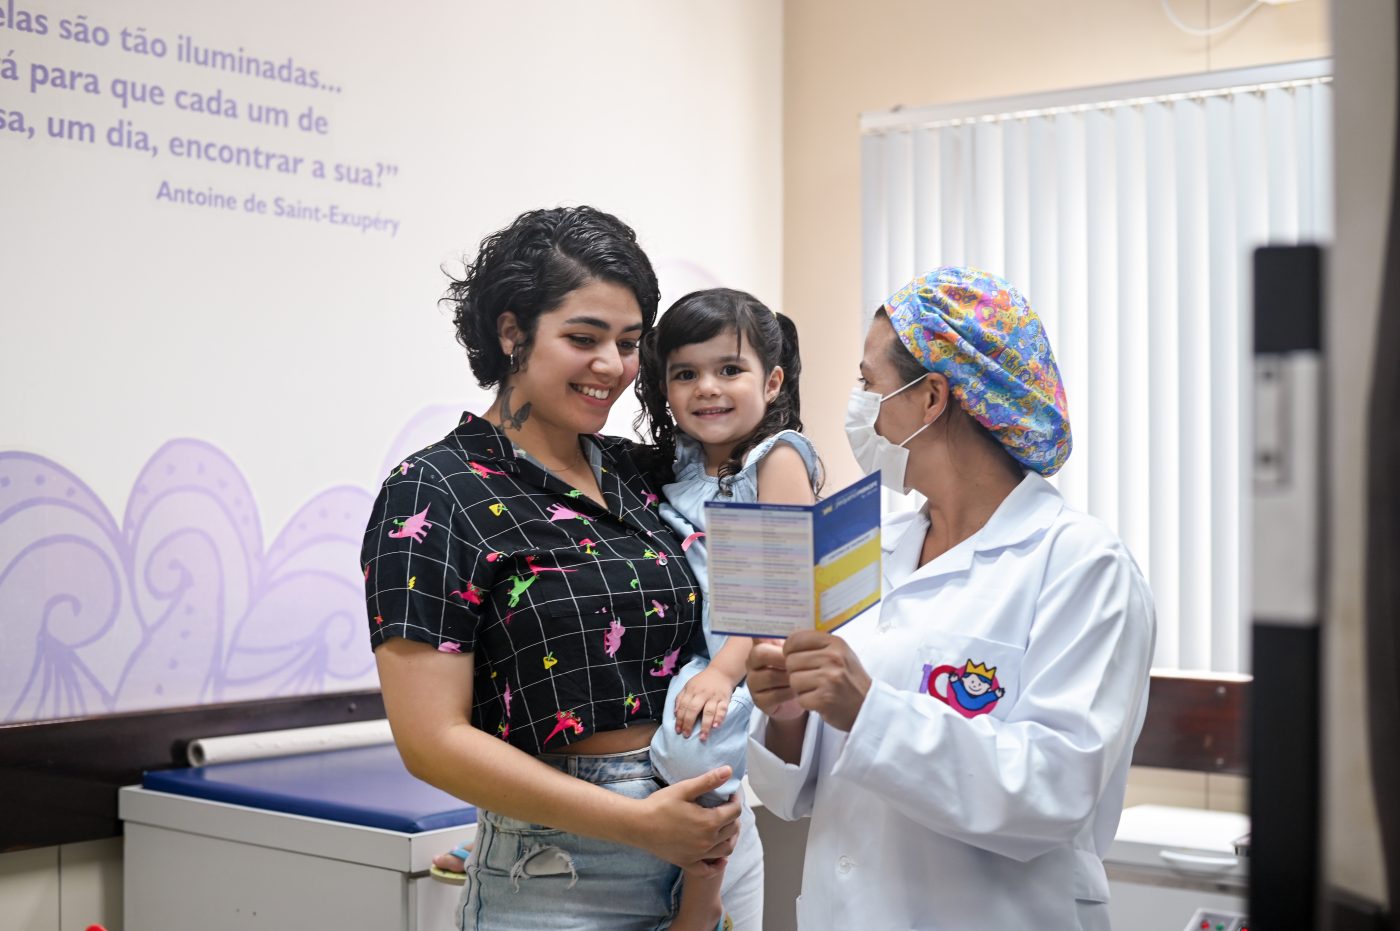 Centro de Vacinas Pequeno Príncipe: 25 anos de excelência em saúde